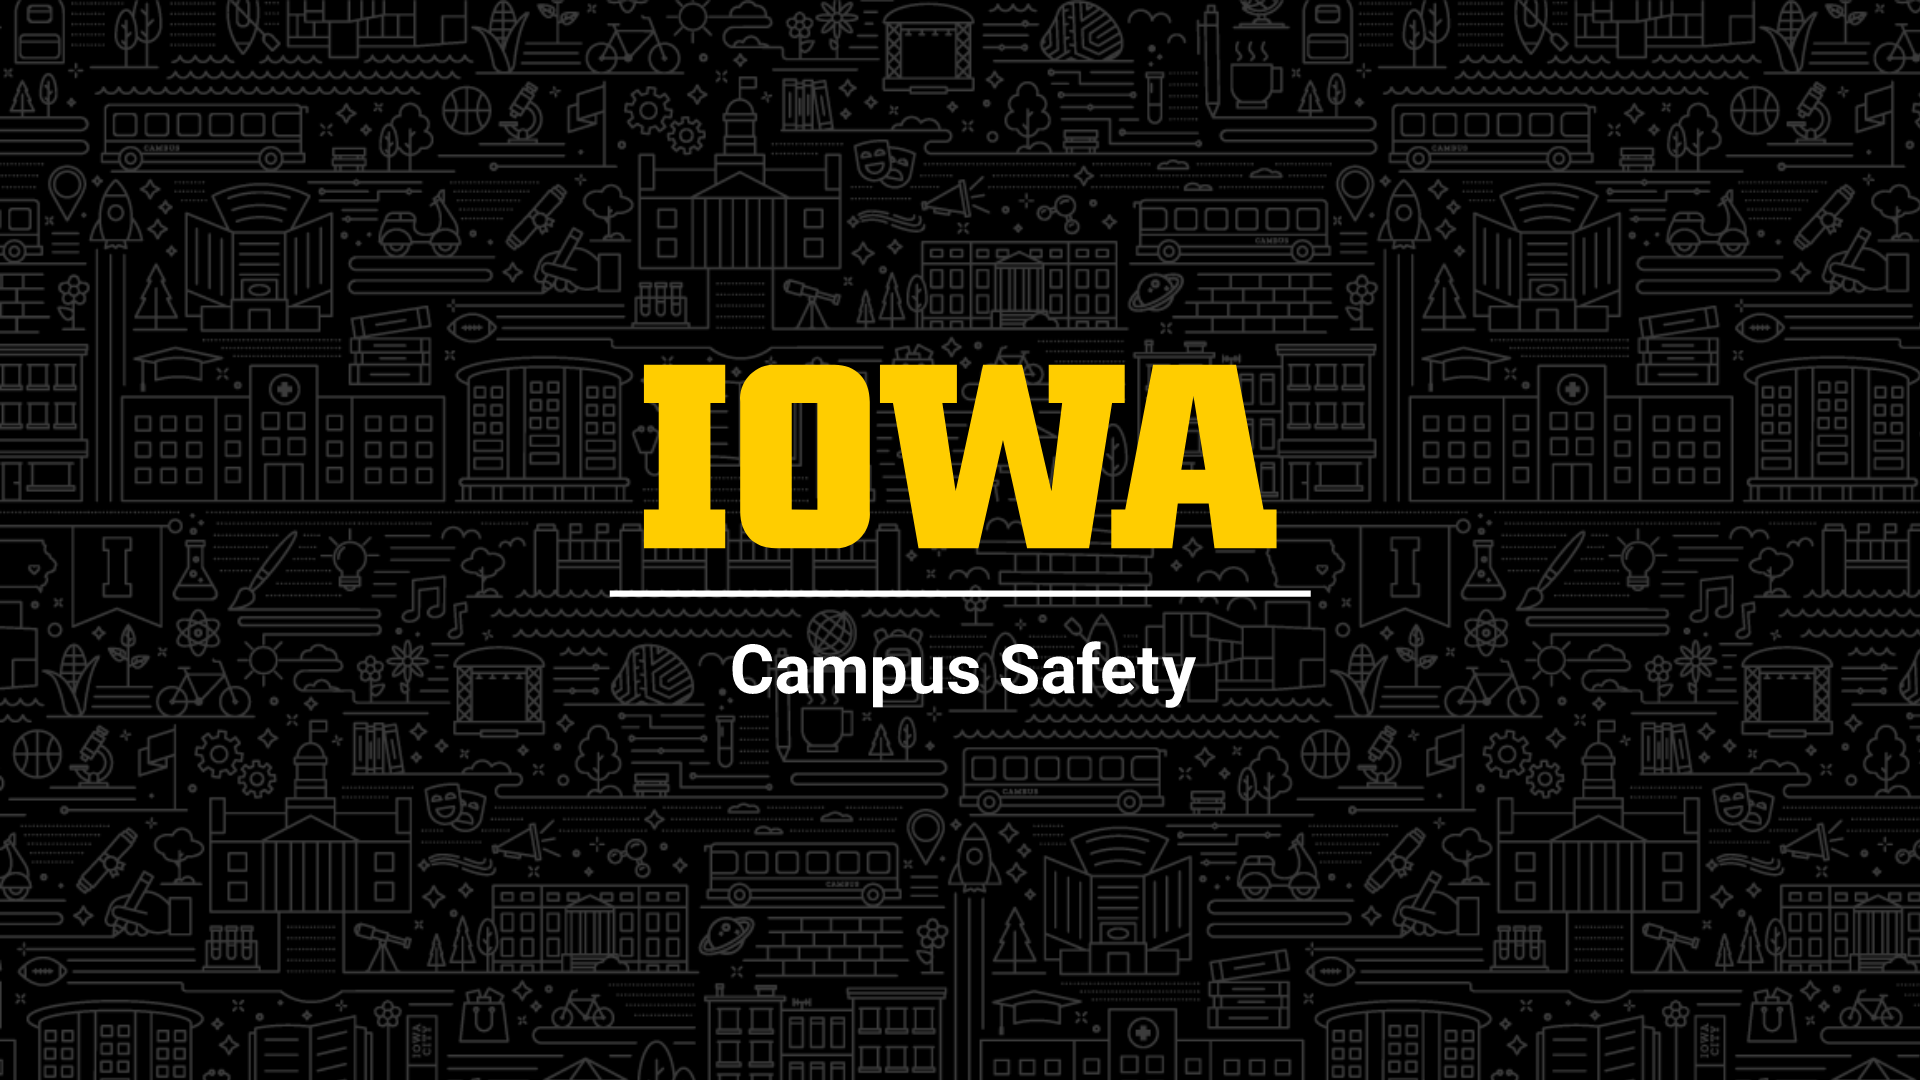 Iowa Campus Safety logo